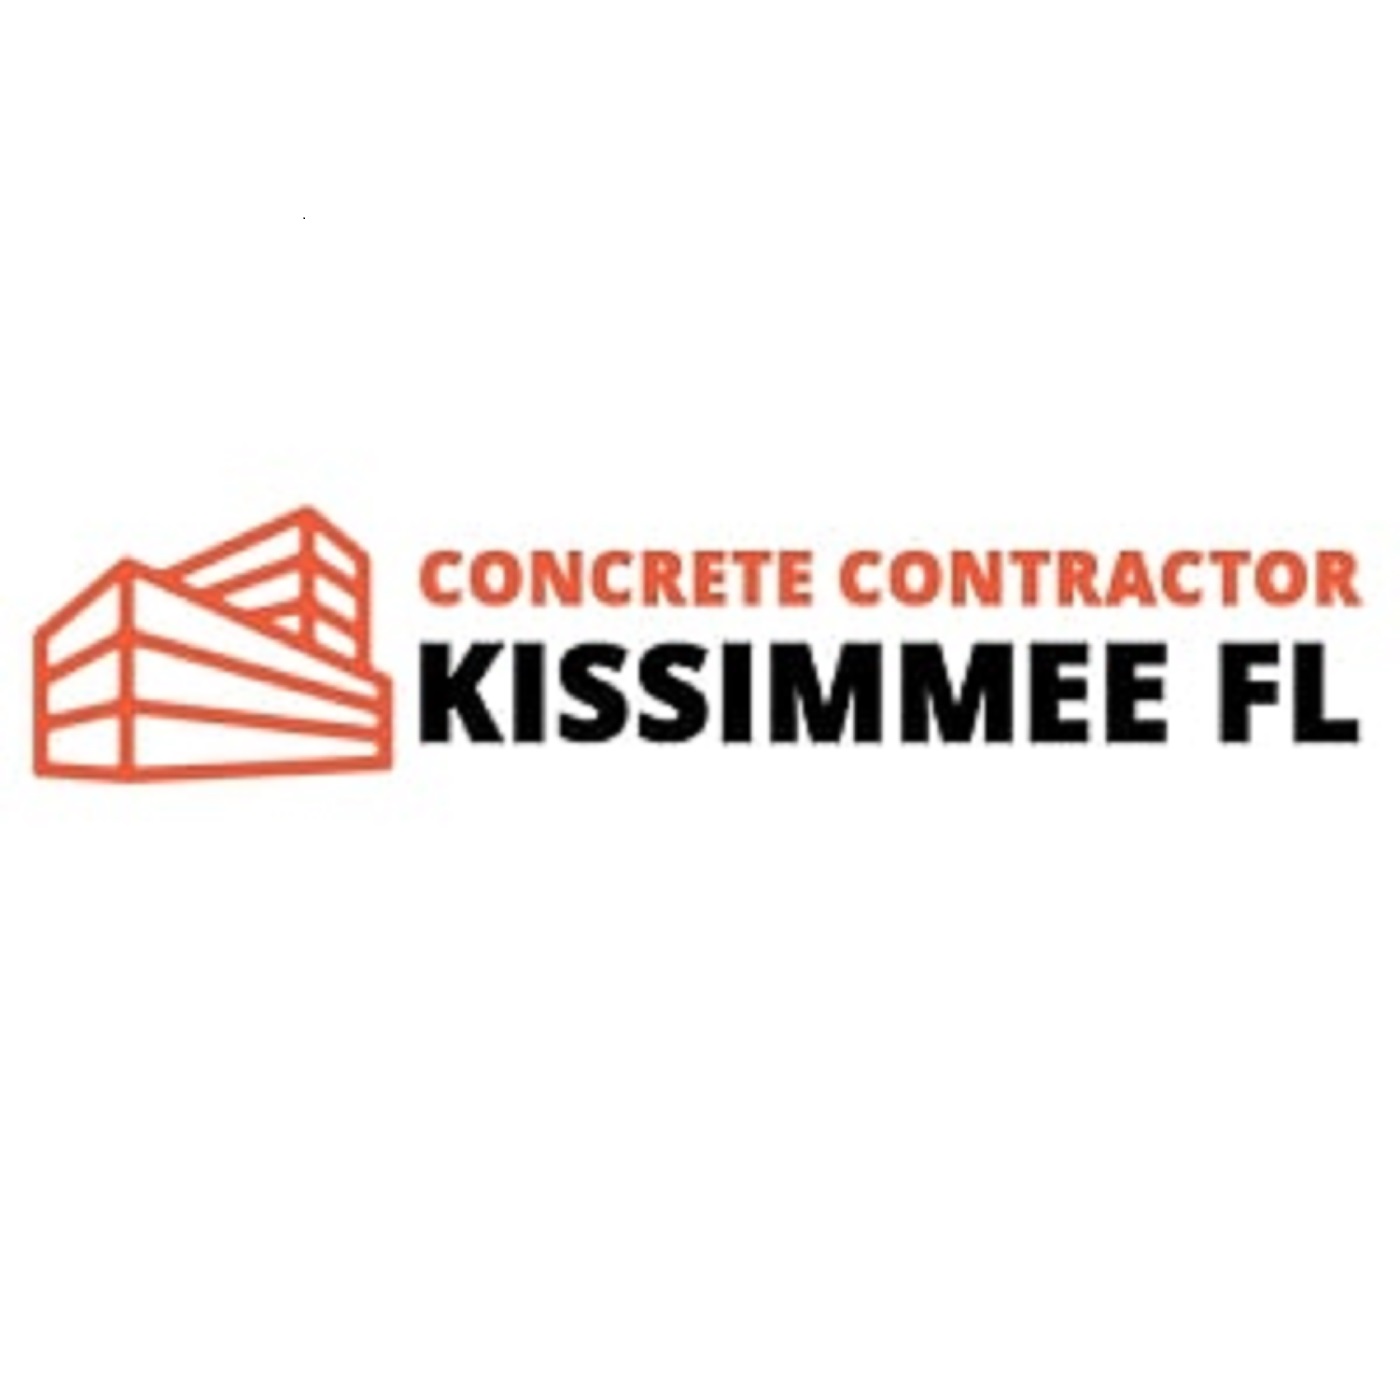 Concrete contractors kissimmee